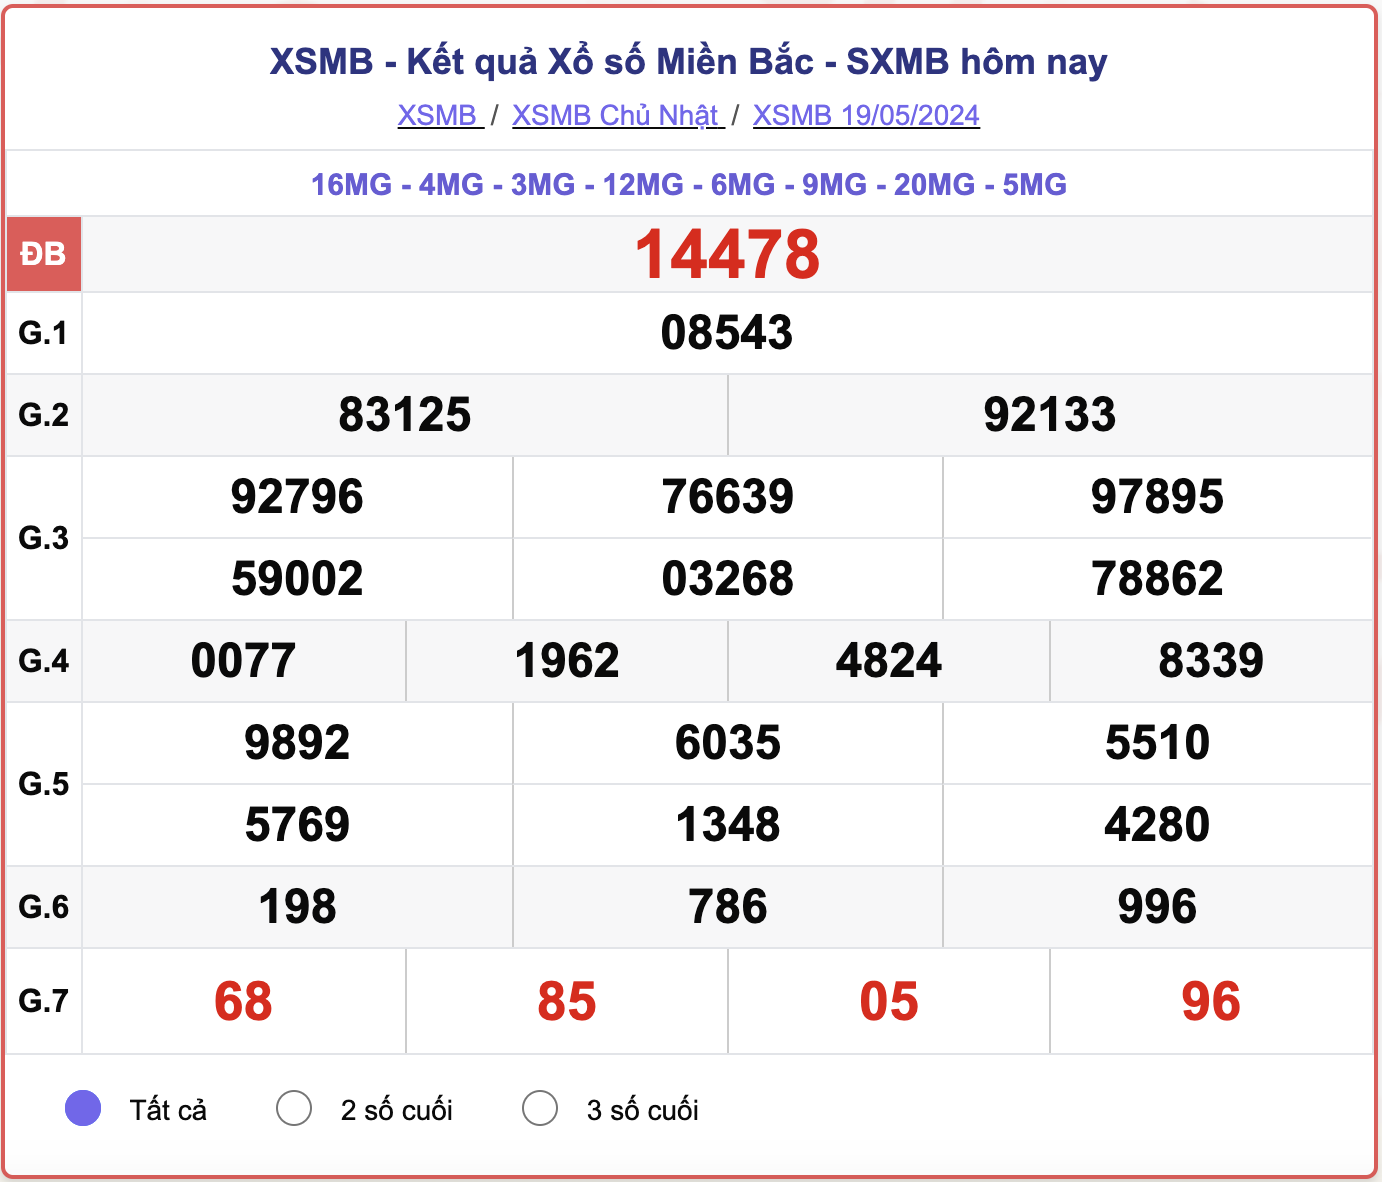 XSMB 24/5 - Kết quả xổ số miền Bắc hôm nay 24/5/2024 - KQXSMB ngày 24/5- Ảnh 6.